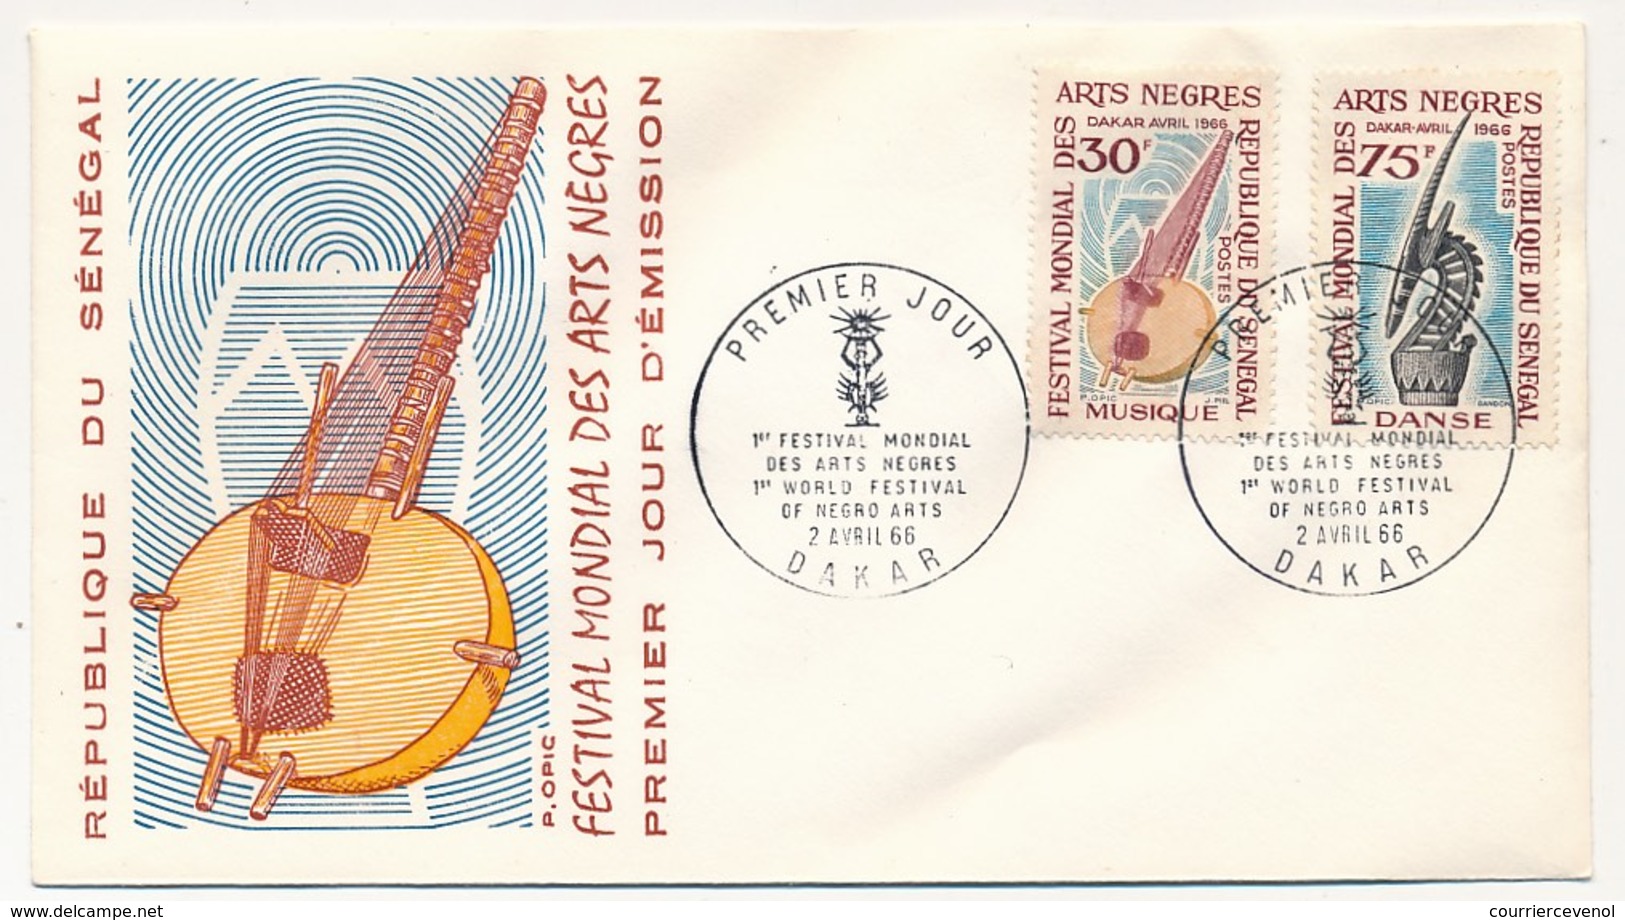 SENEGAL => 3 Enveloppes FDC - Festival Mondial Des Arts Nègres - Dakar - Décembre Et Avril 1966 - Senegal (1960-...)